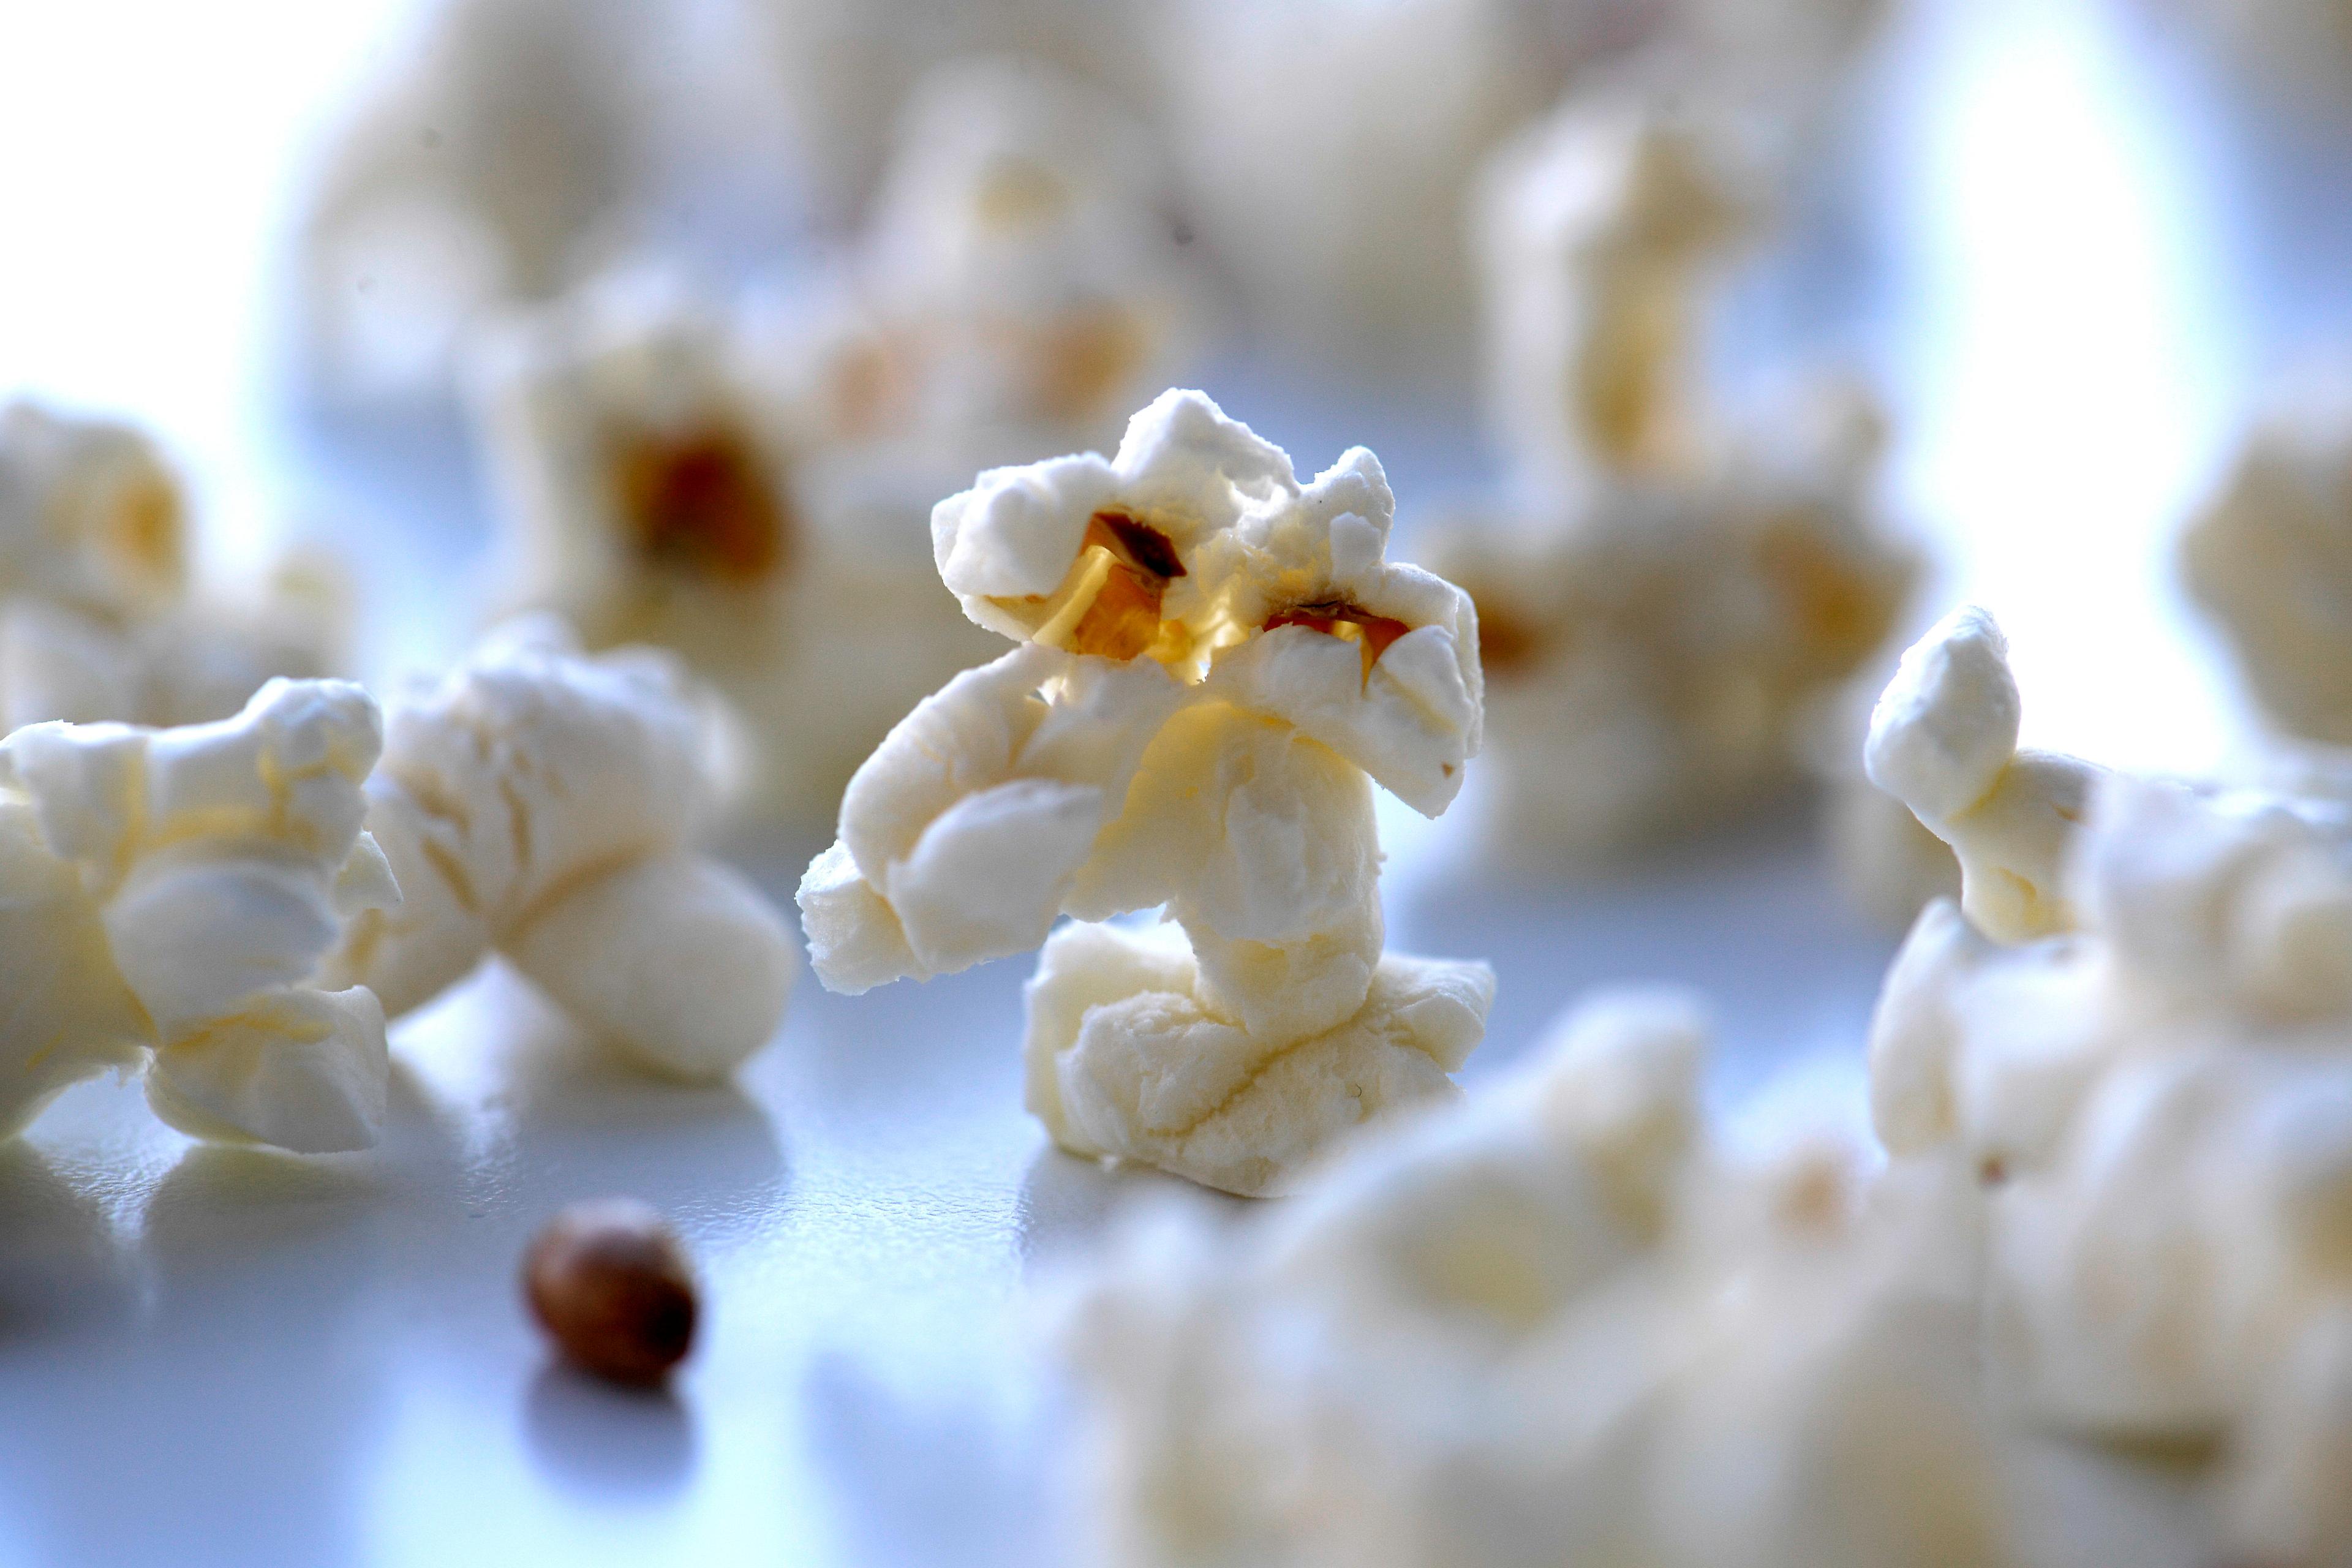 Att köpa popcornkärnor och odla gräs har blivit en populär trend. Arkivbild. Foto: Janerik Henriksson/TT